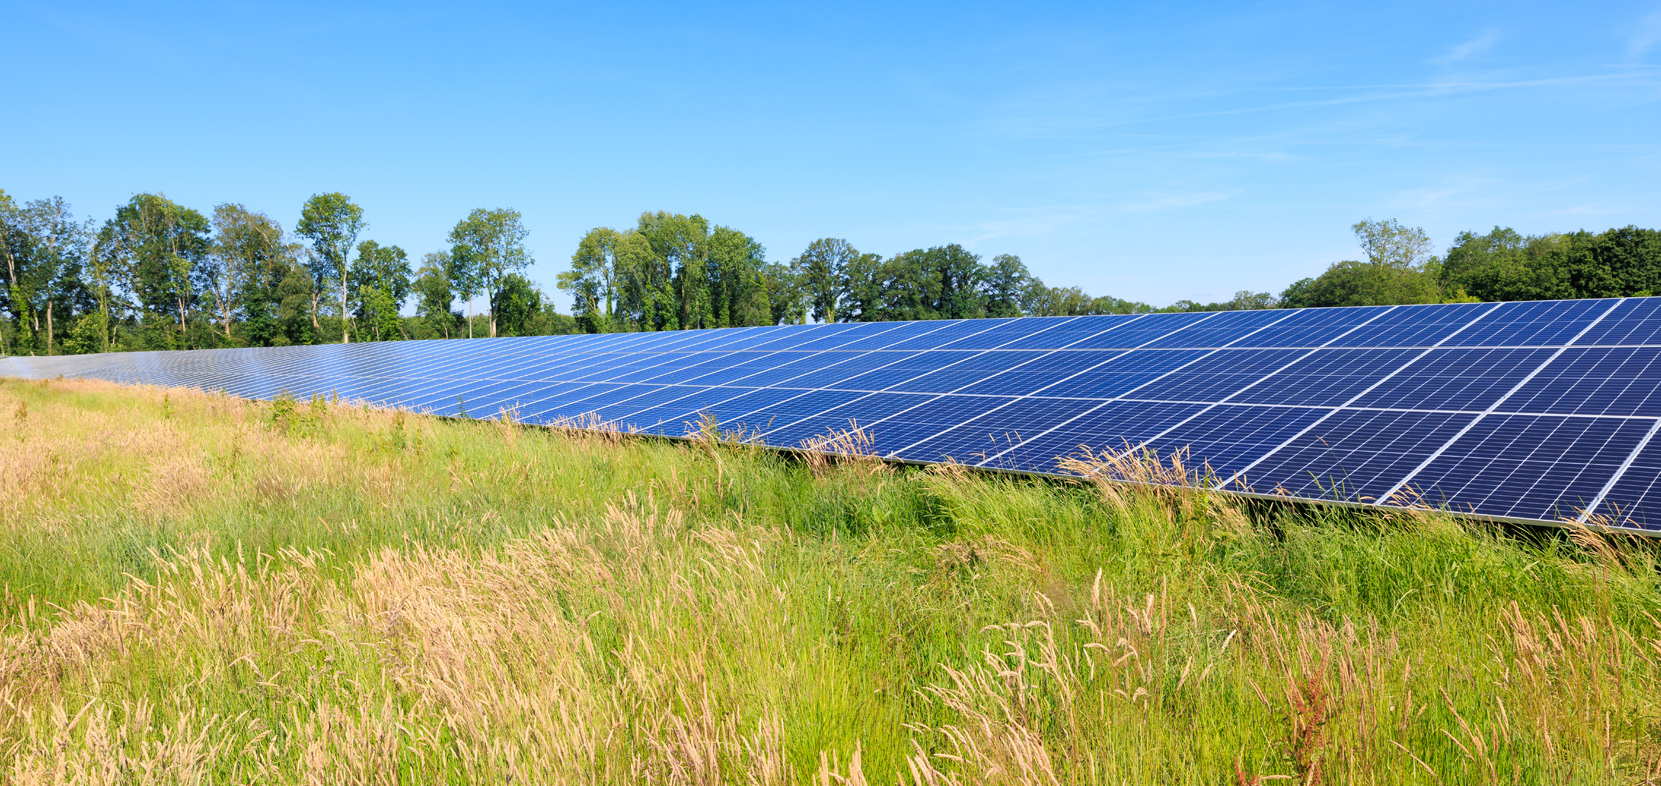 Landwirtschaft aufgeben? Verpachten Sie Ihr Grundstück lieber für Photovoltaikanlagen.